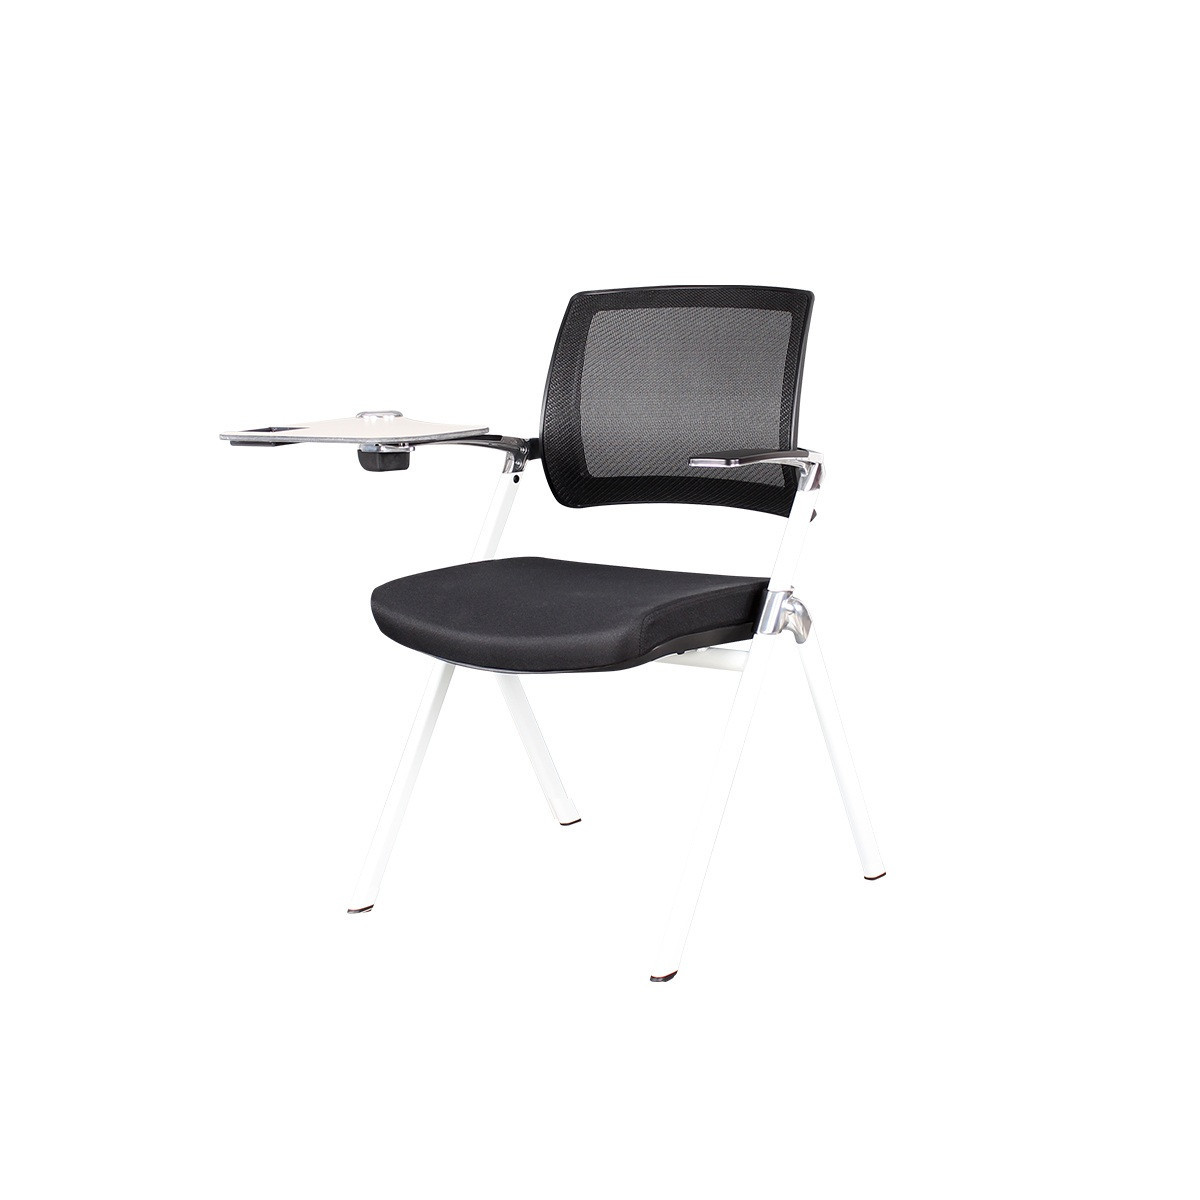 Современный стул для офиса с роликами, подлокотниками, пюпитром